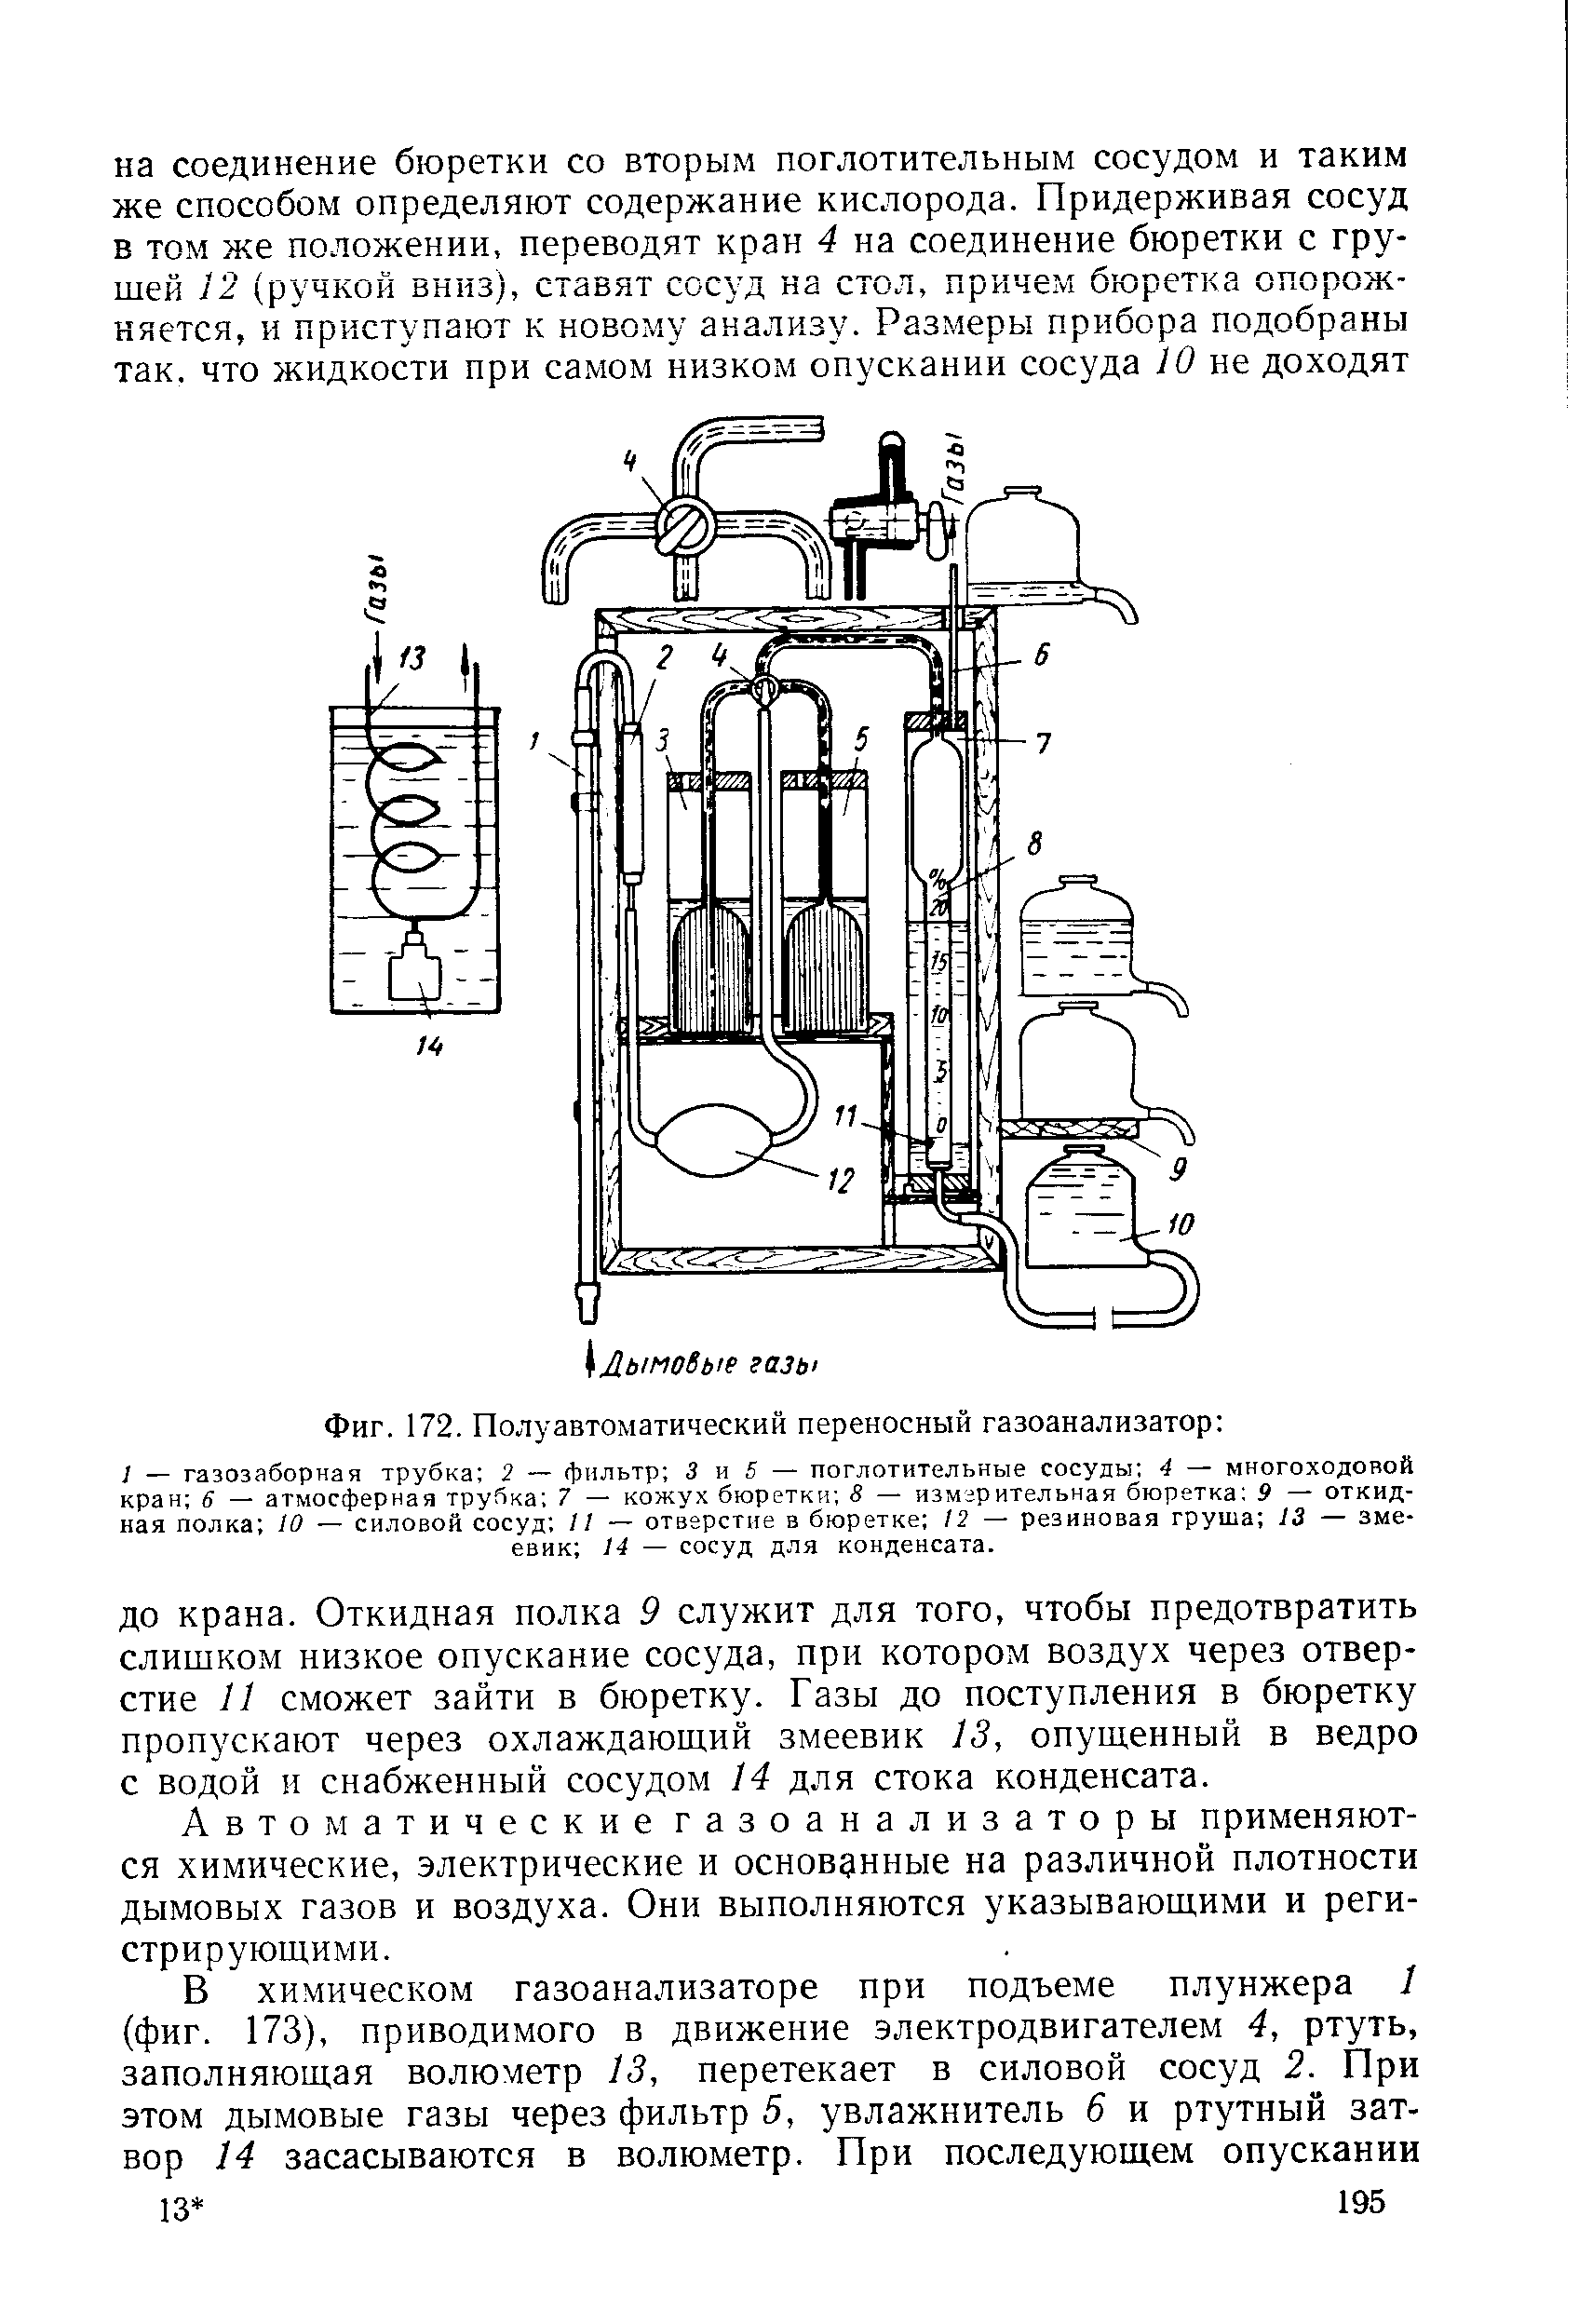 Фиг. 172. Полуавтоматический переносный газоанализатор 
